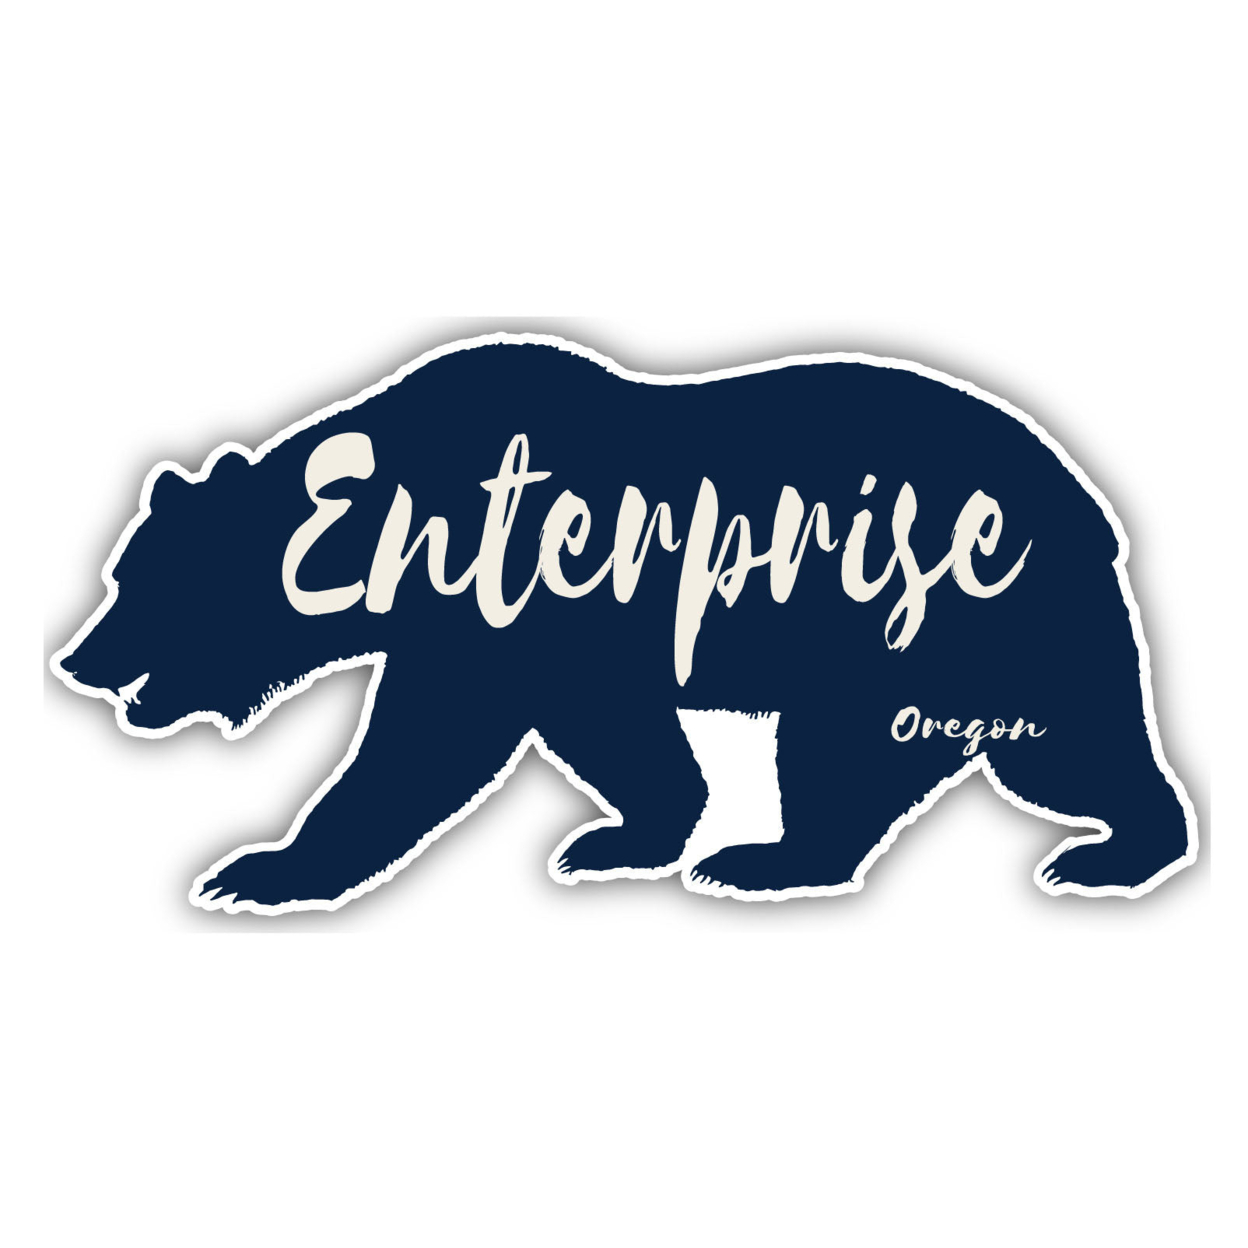 Enterprise Oregon Souvenir Decorative Stickers (Choose Theme And Size) - Single Unit, 8-Inch, Bear